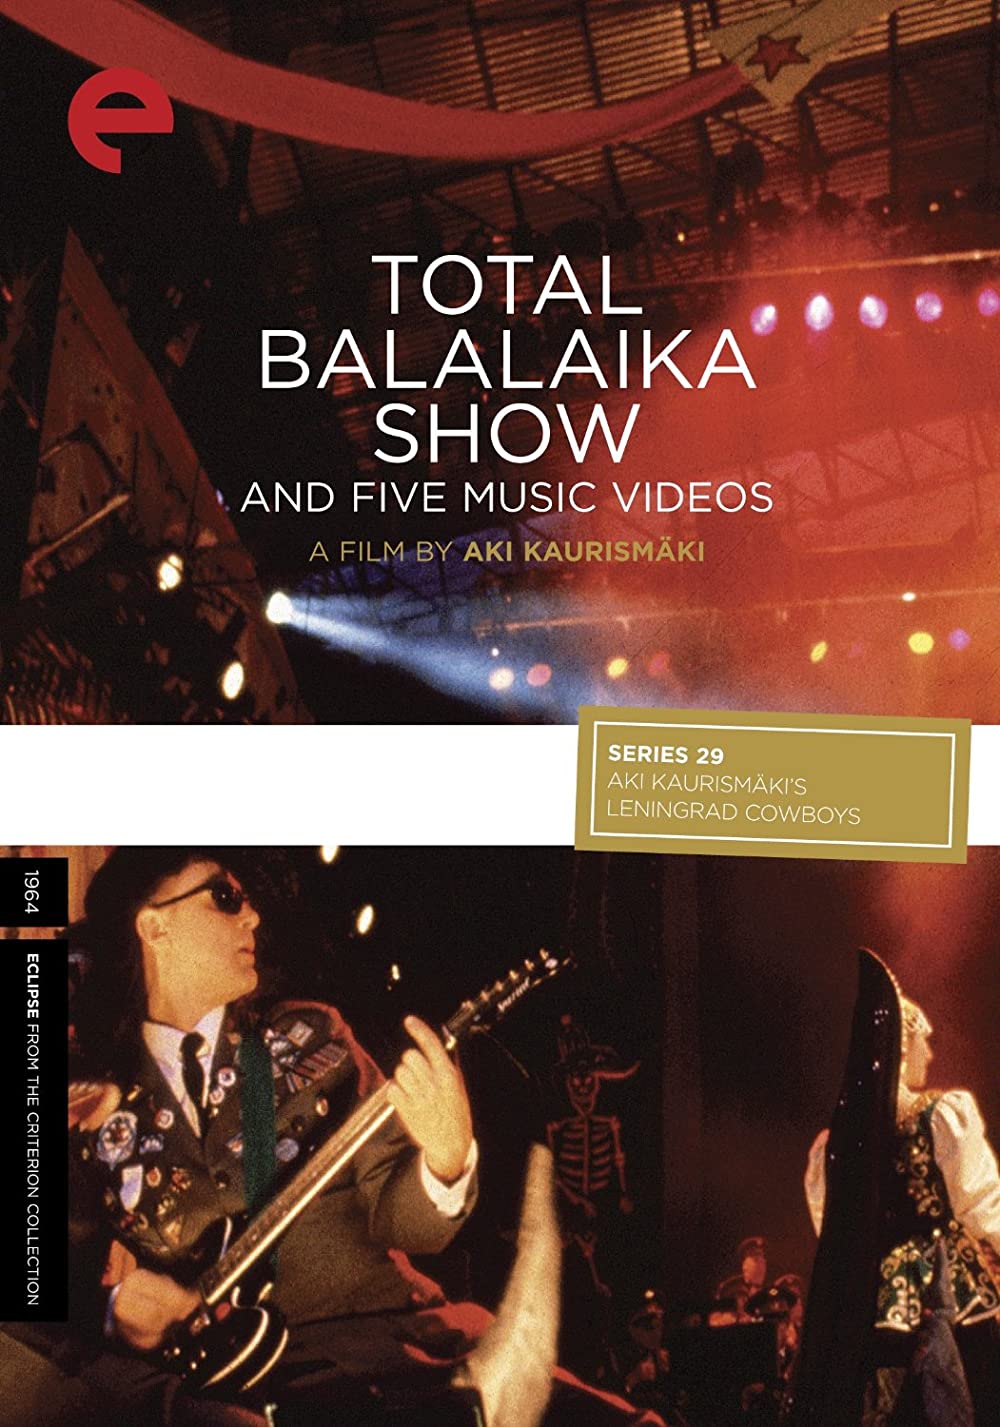 Filmbeschreibung zu Total Balalaika Show